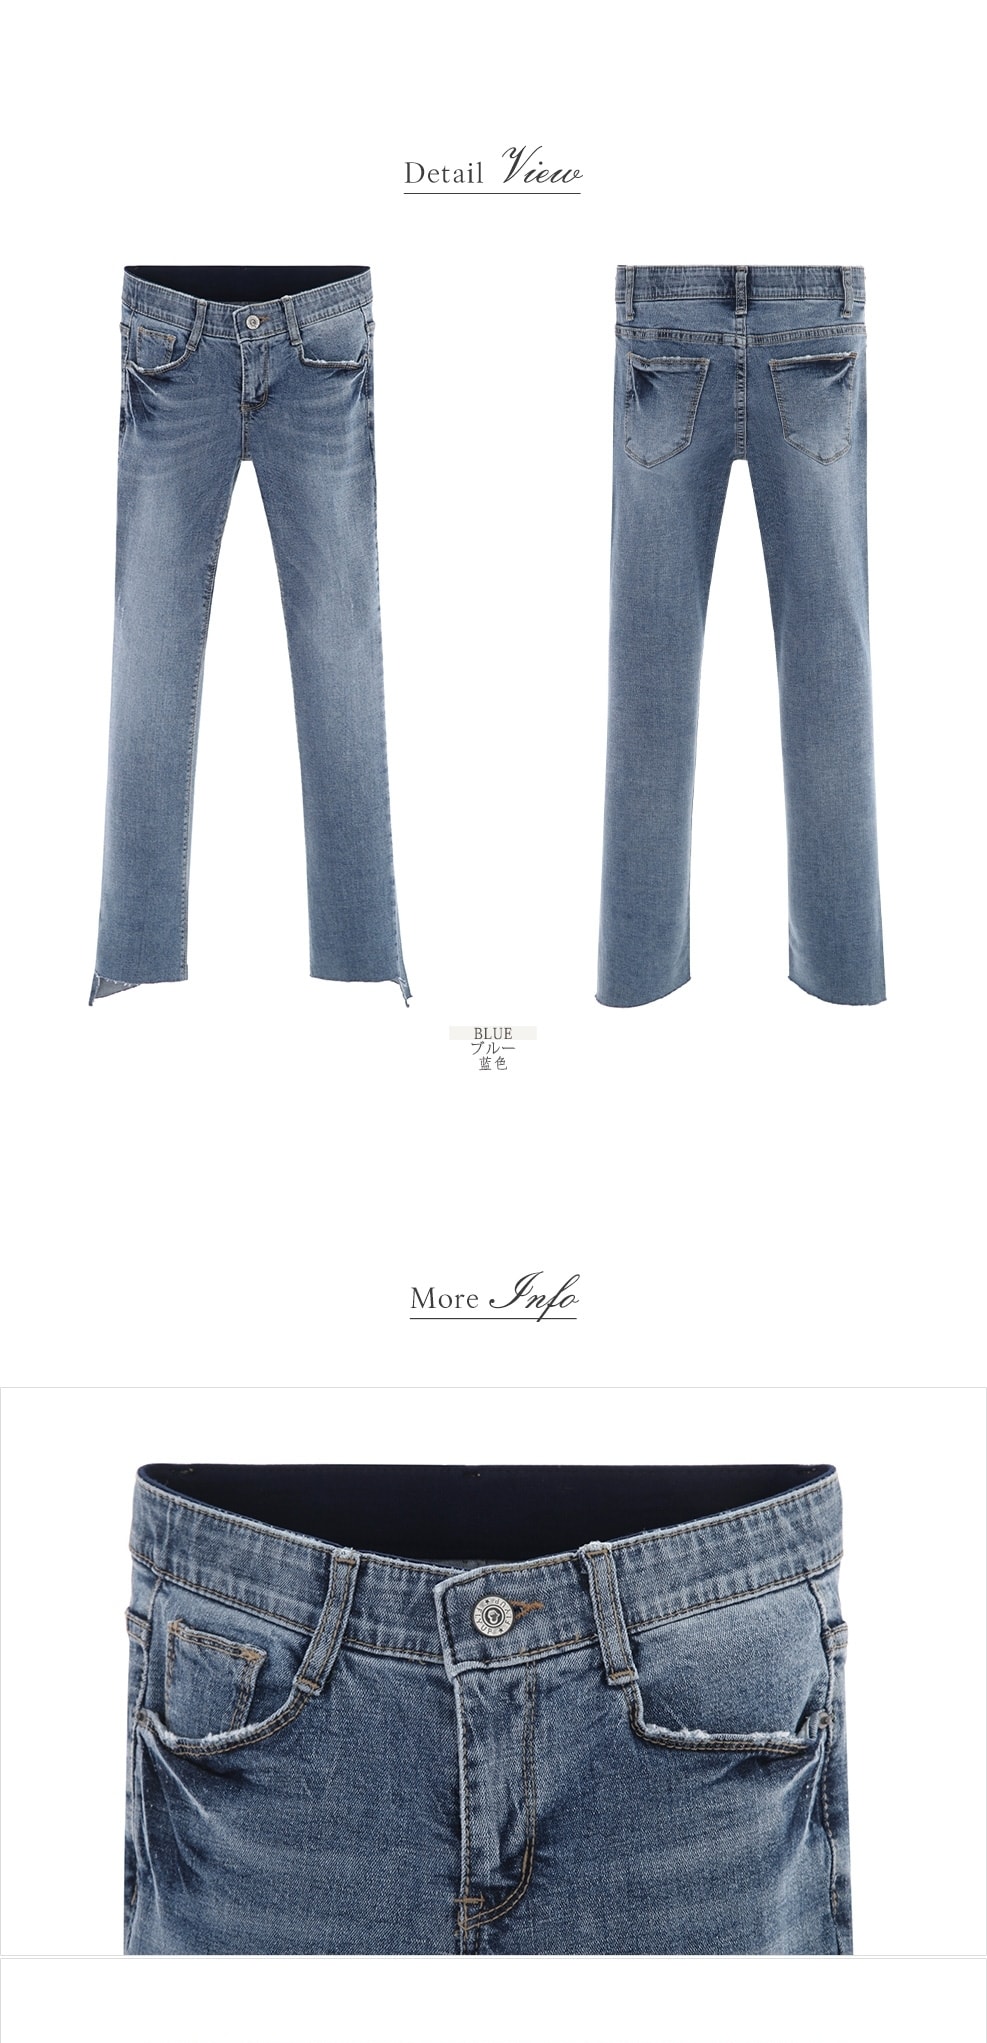 【韩国直邮】ATTRANGS 下摆不对称裁剪细节隐藏松紧设计正装风格喇叭型牛仔裤 蓝色 M